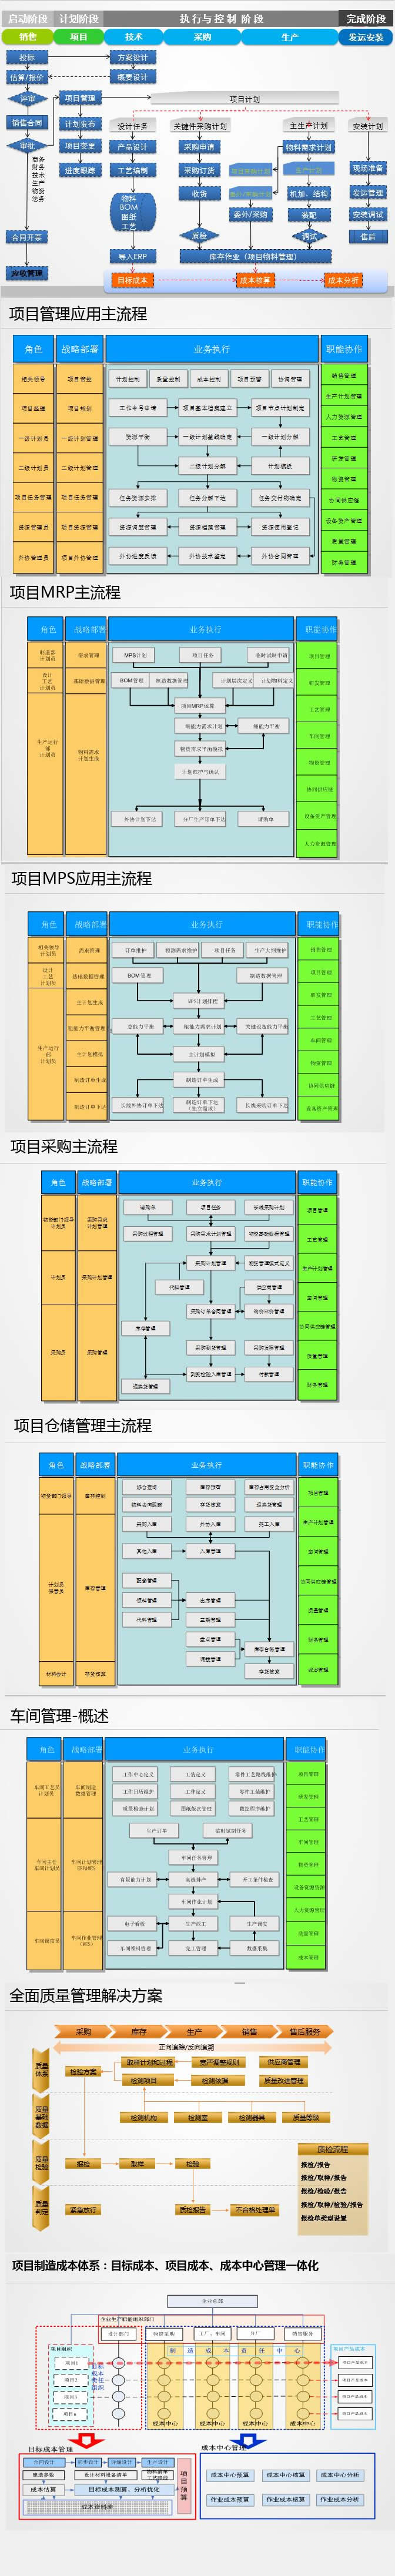 上海金蝶软件服务